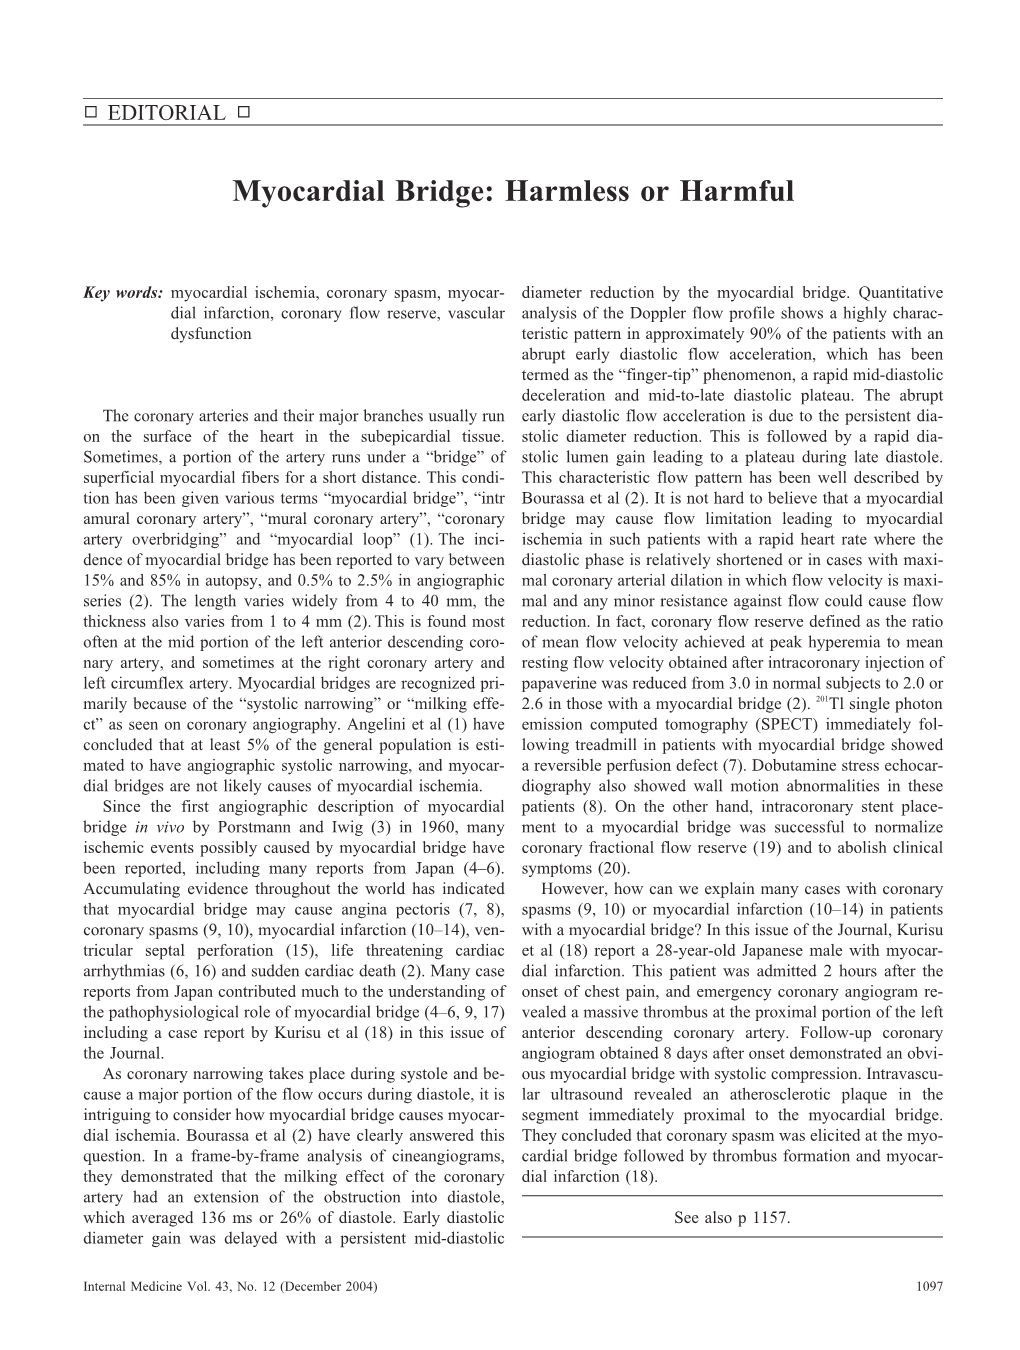 Myocardial Bridge: Harmless Or Harmful